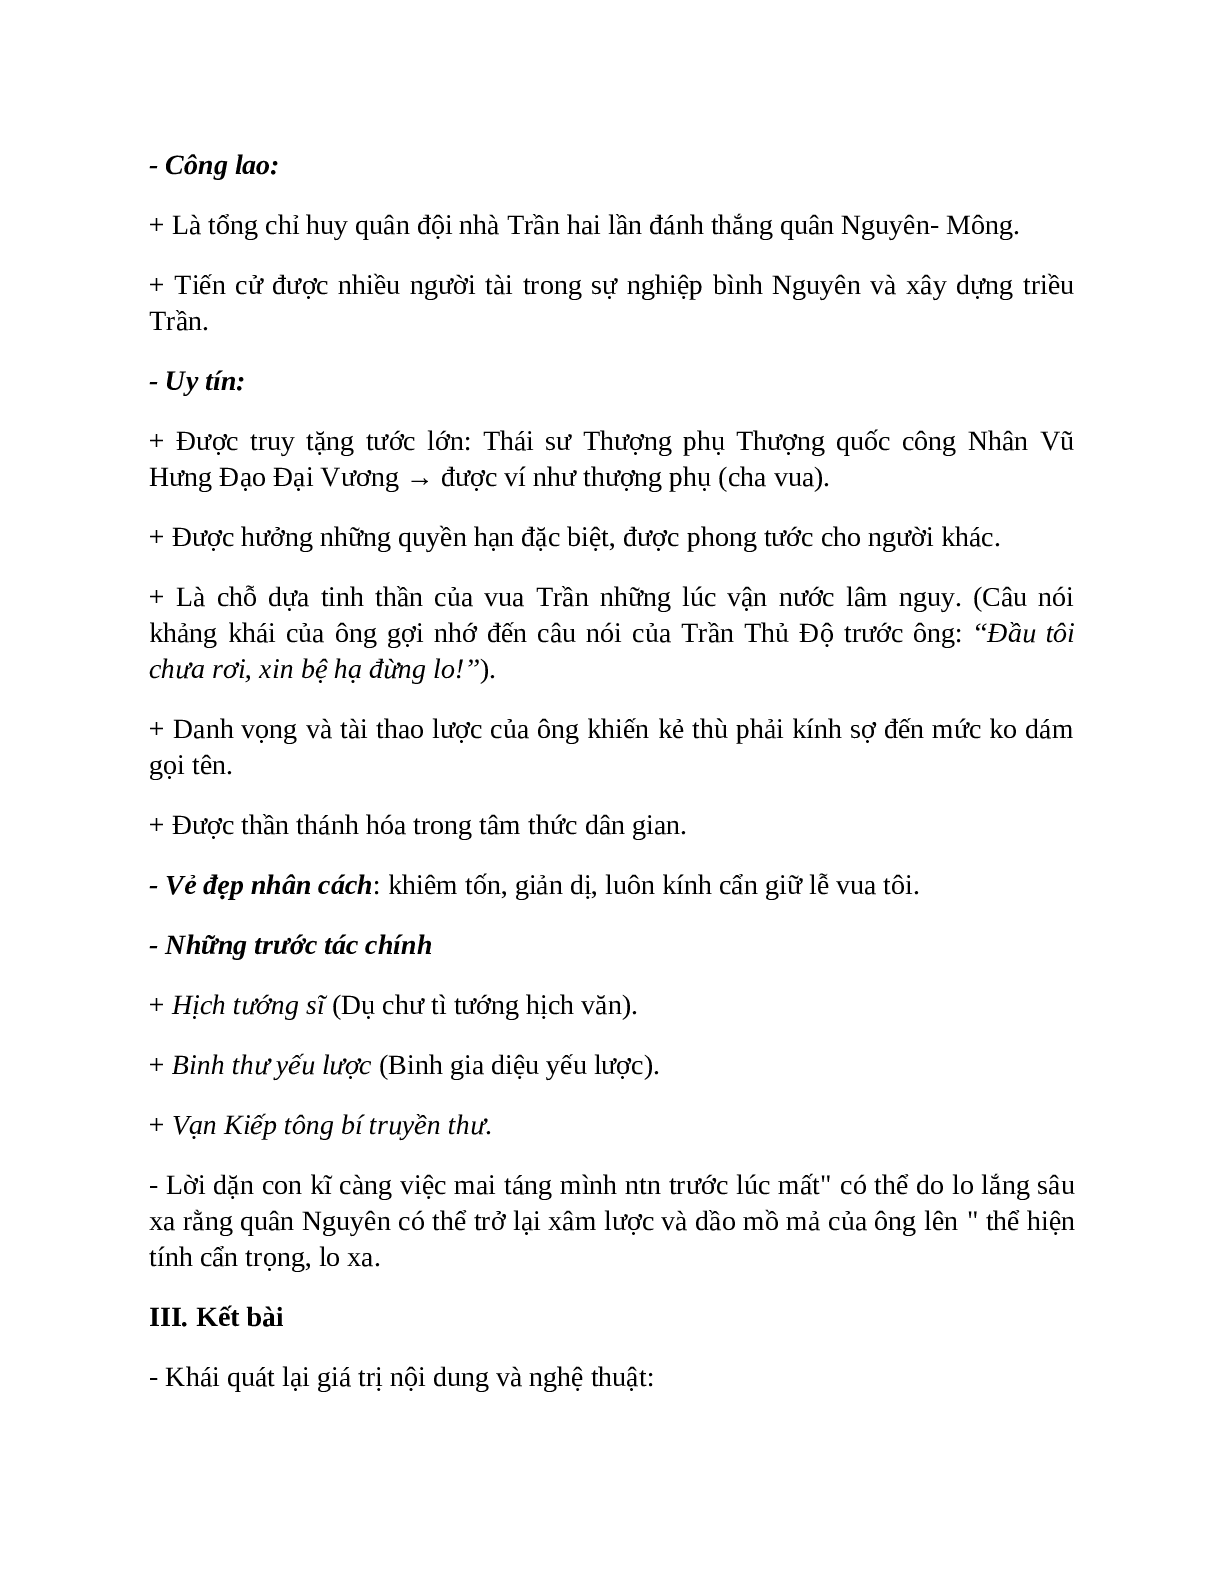 Sơ đồ tư duy bài Hưng Đạo đại vương Trần Quốc Tuấn dễ nhớ, ngắn nhất - Ngữ văn lớp 10 (trang 6)